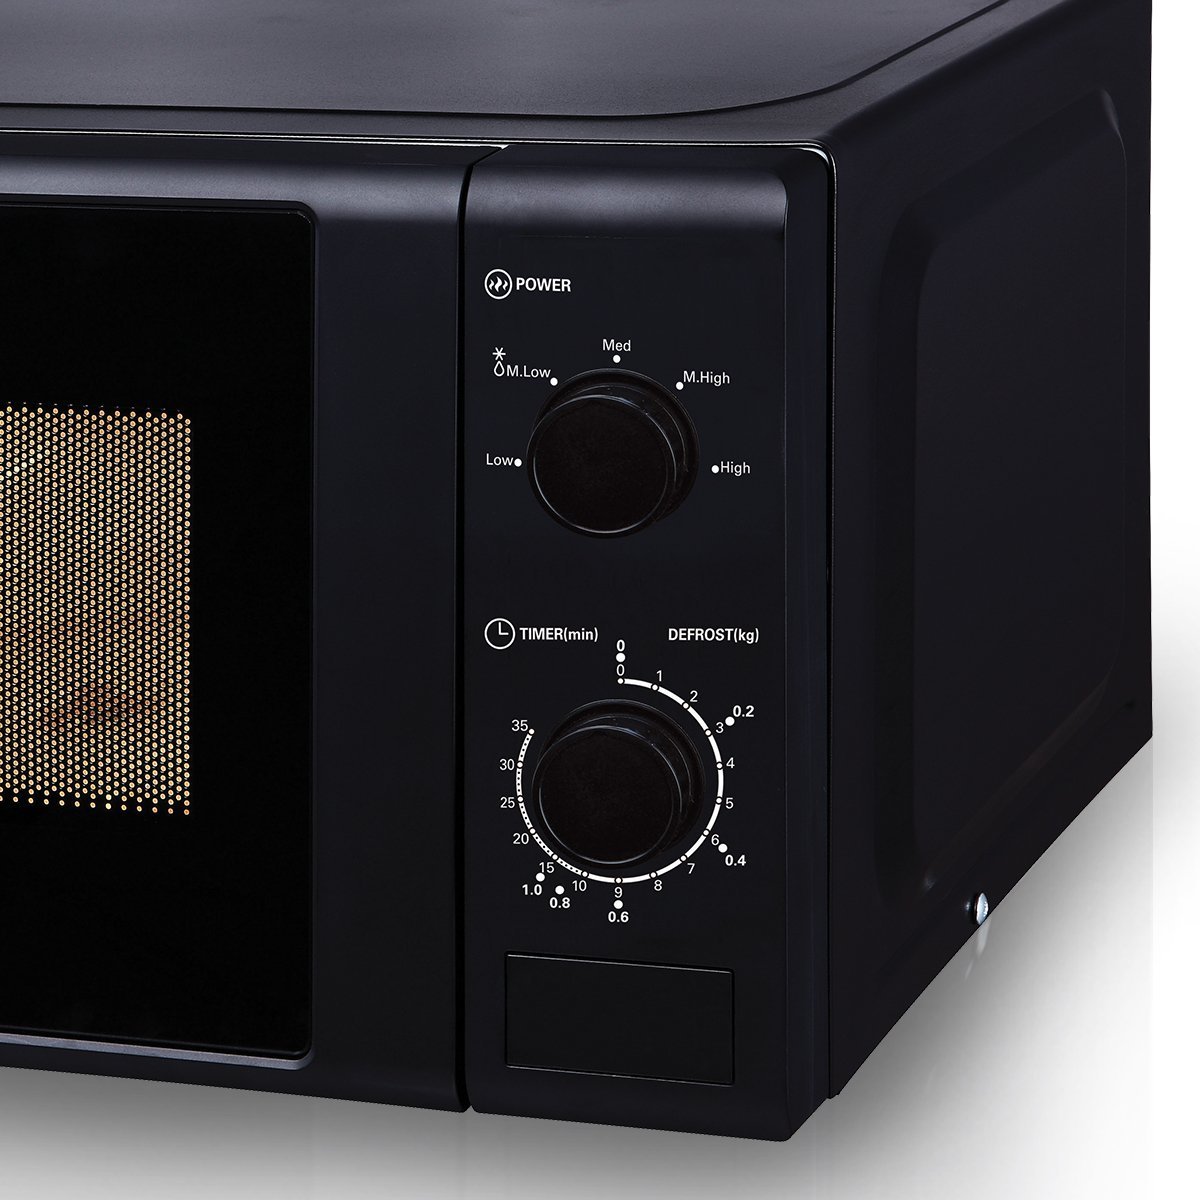 Surprisingly Friendly Midea 20L Black Mechanical Microwave Oven